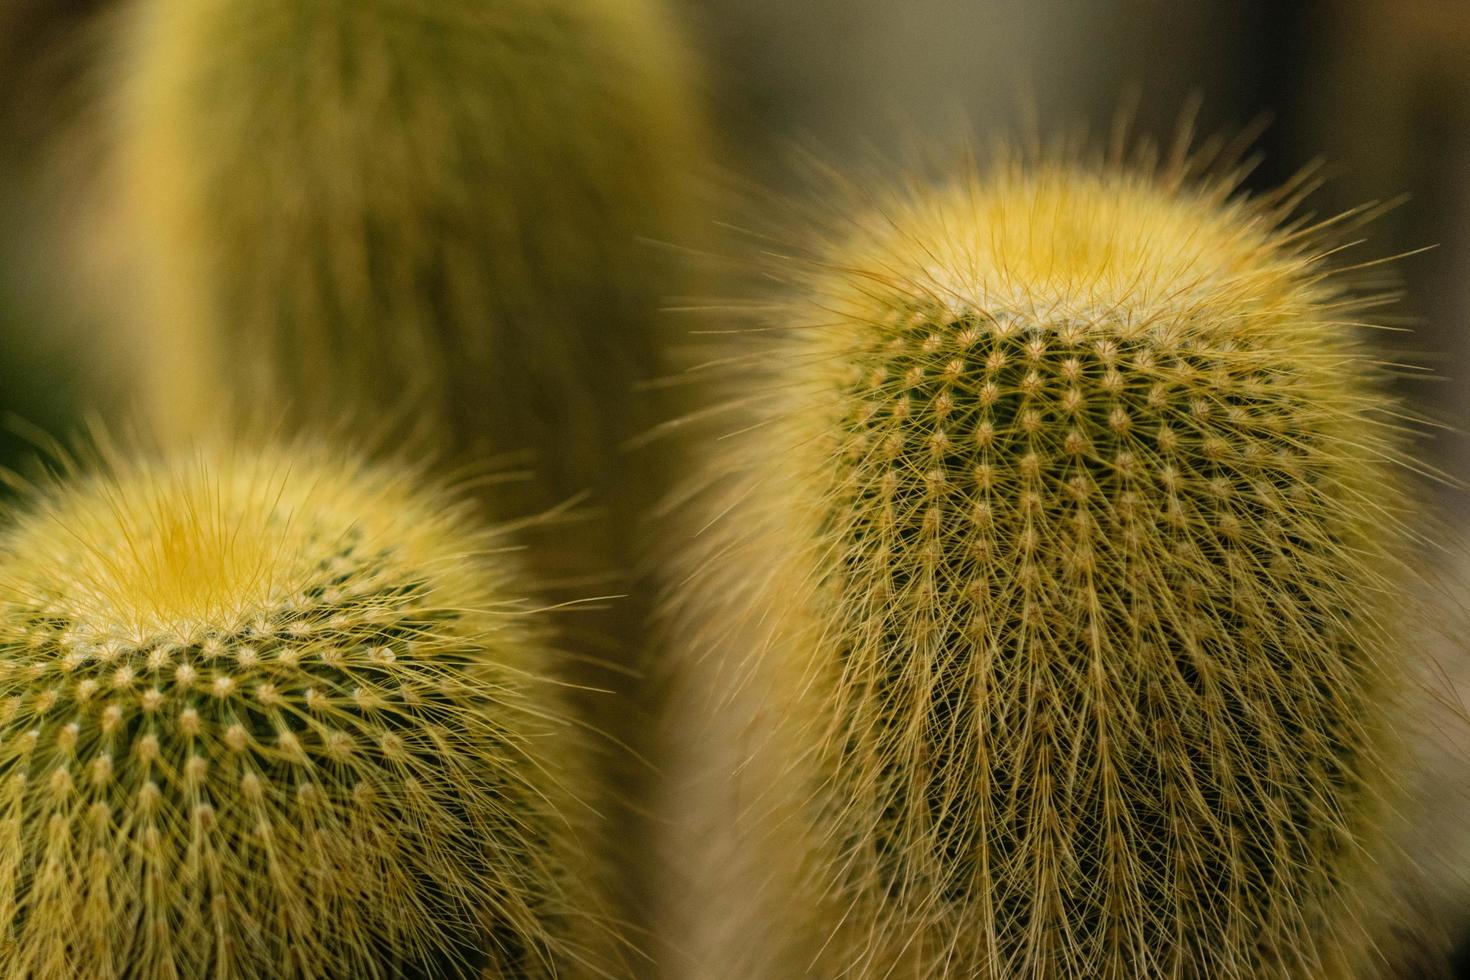 Green cactus plant photo